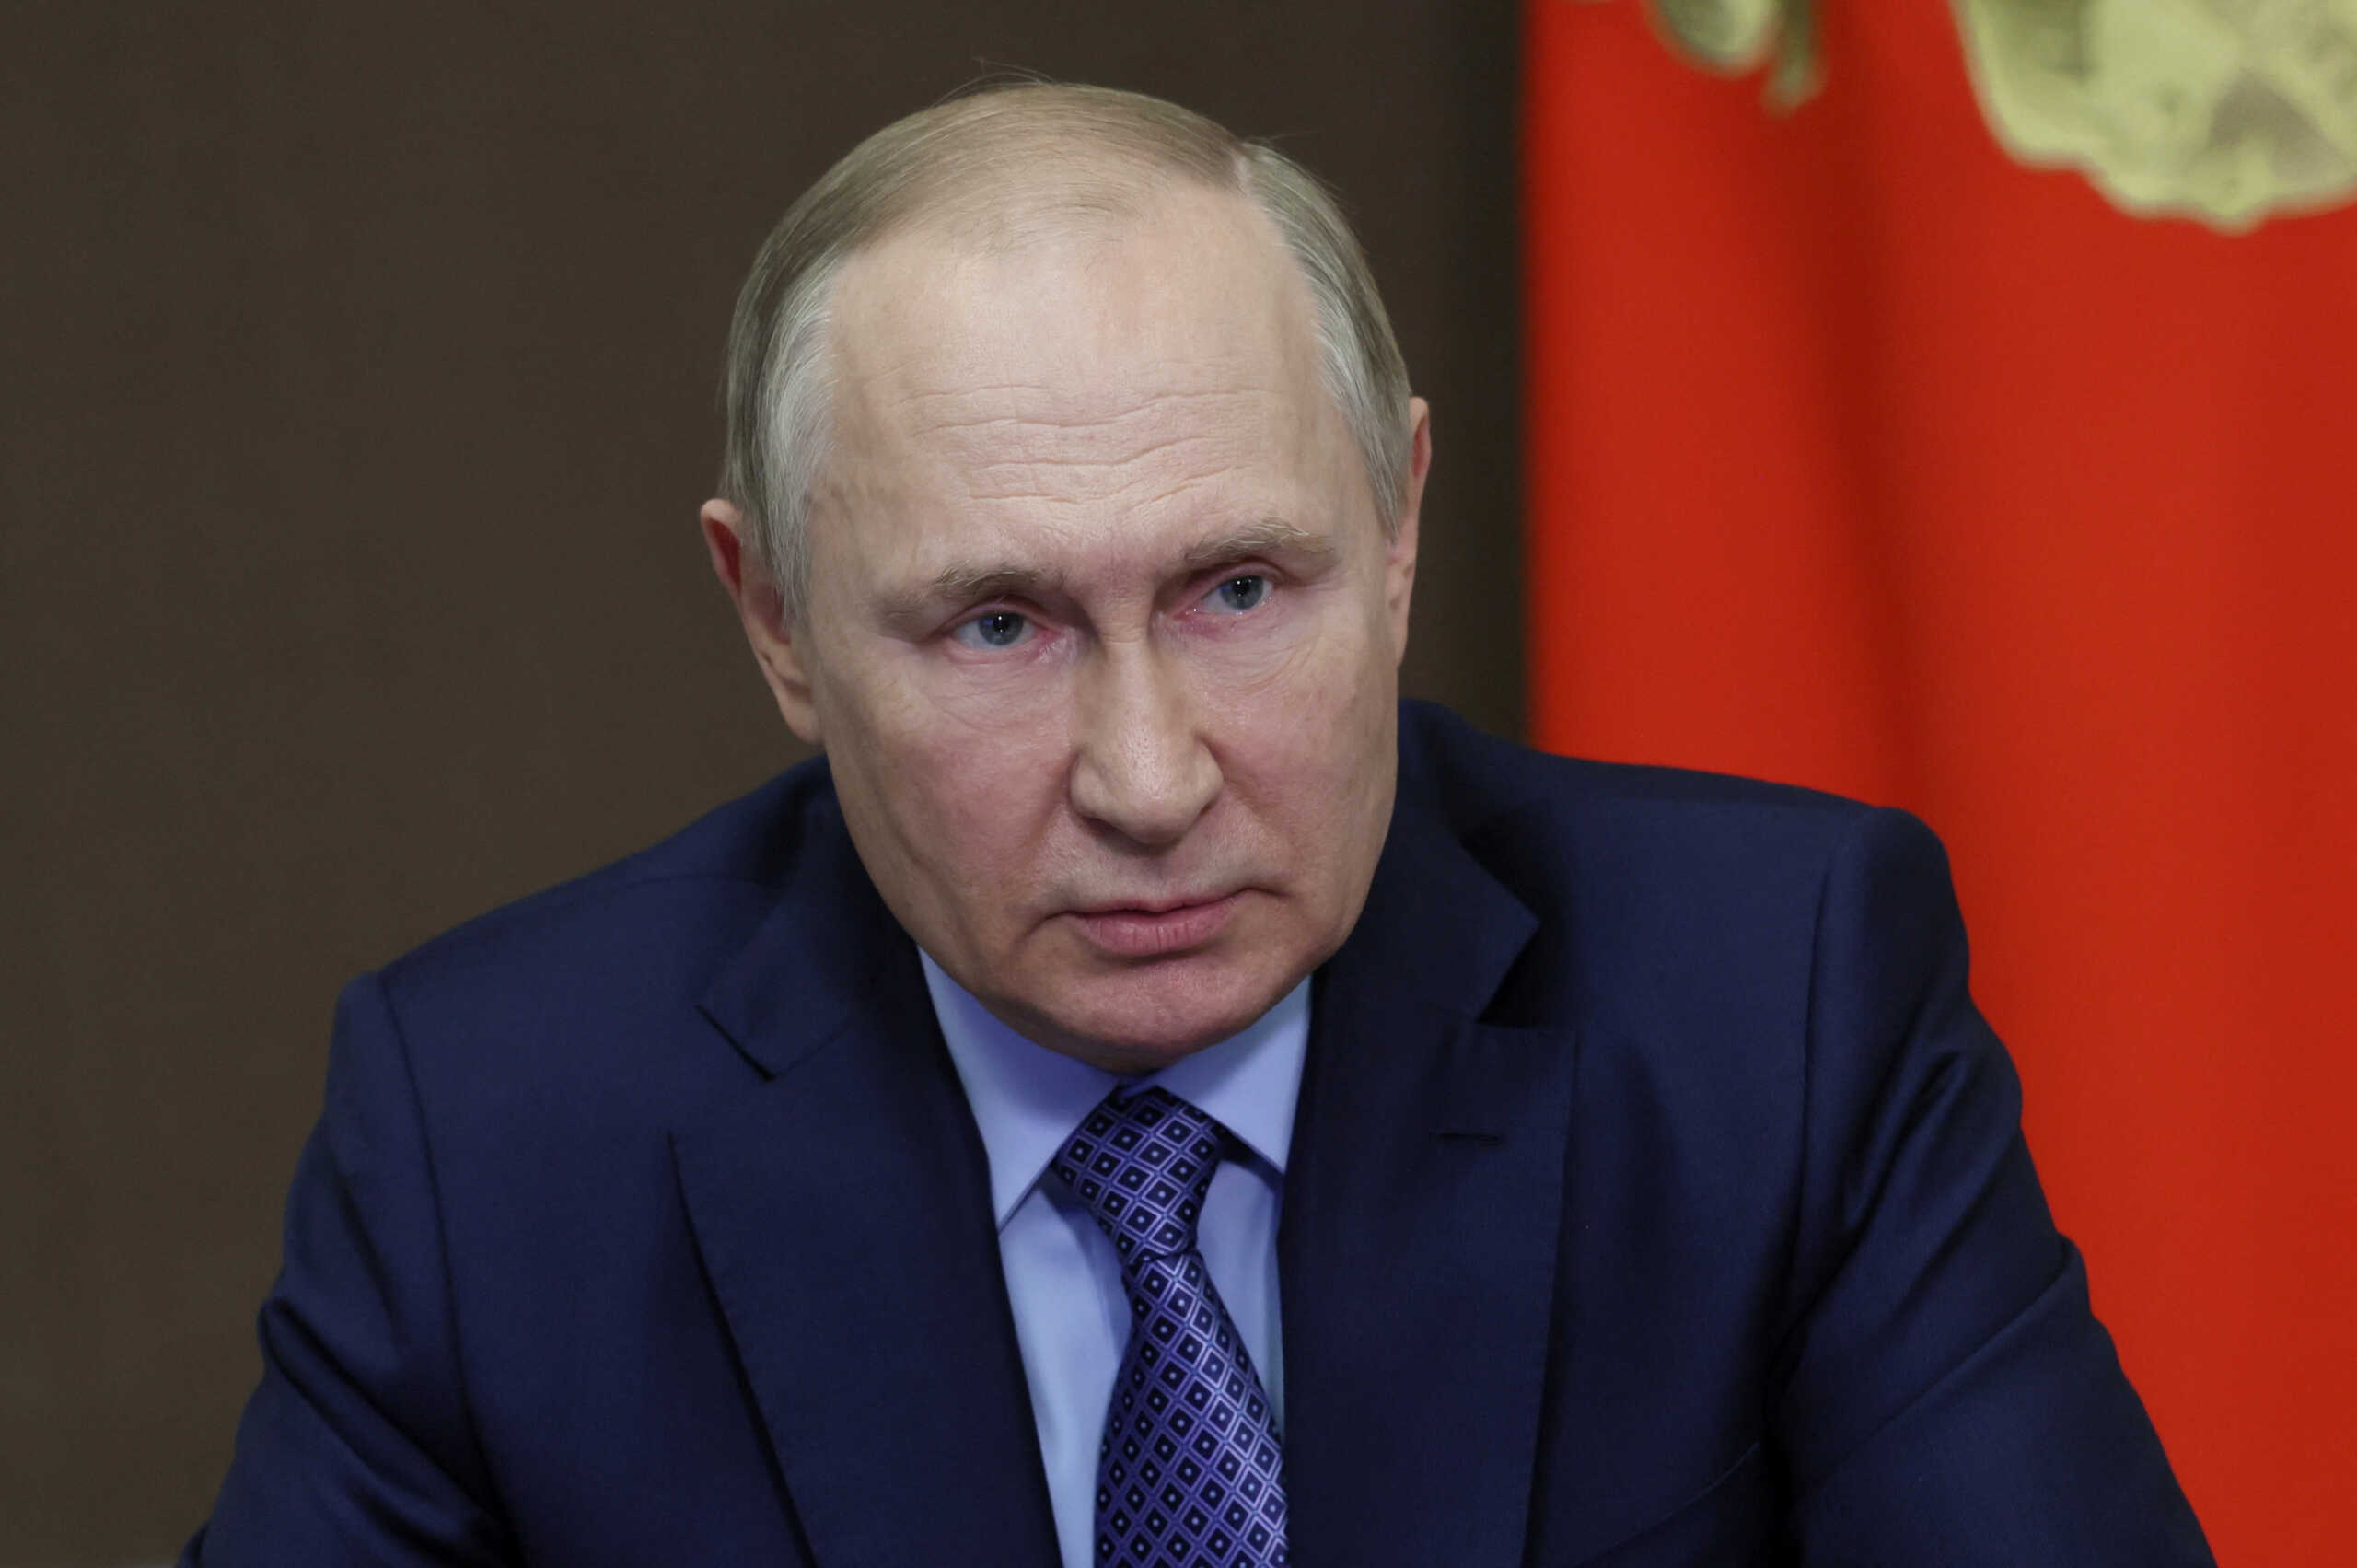 Πούτιν: Η Μόσχα μπορεί να αποχωρήσει από τη συμφωνία για τα σιτηρά αλλά δεν θα εμποδίσει τις αποστολές από την Ουκρανία στην Τουρκία